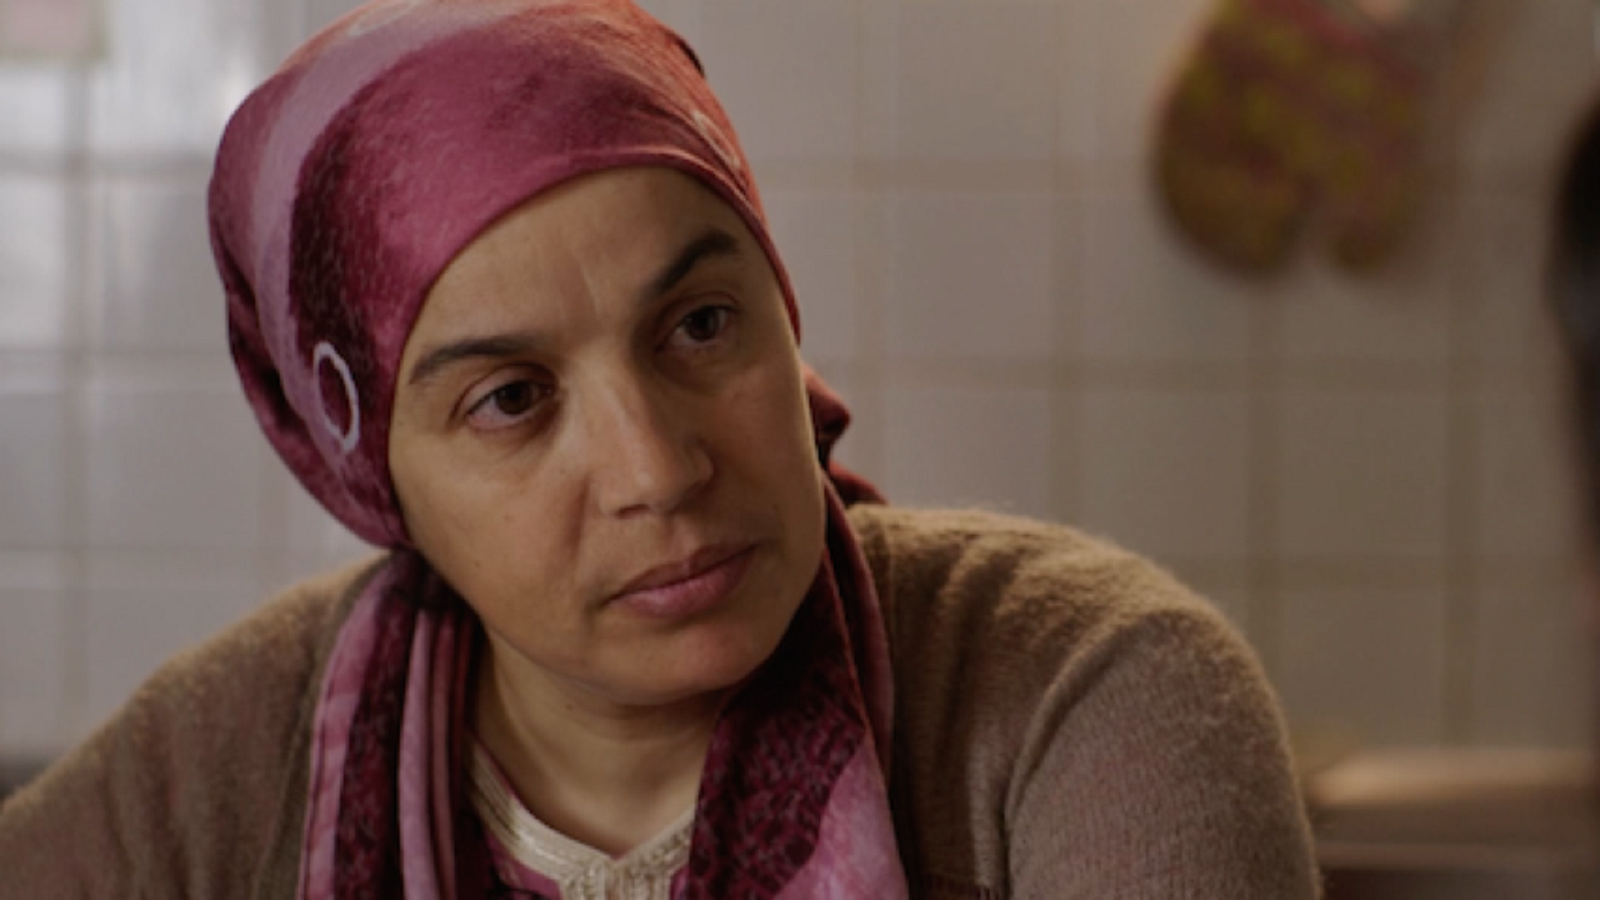  الوجه المغيب للخادمة العربية في السينما الفرنسية